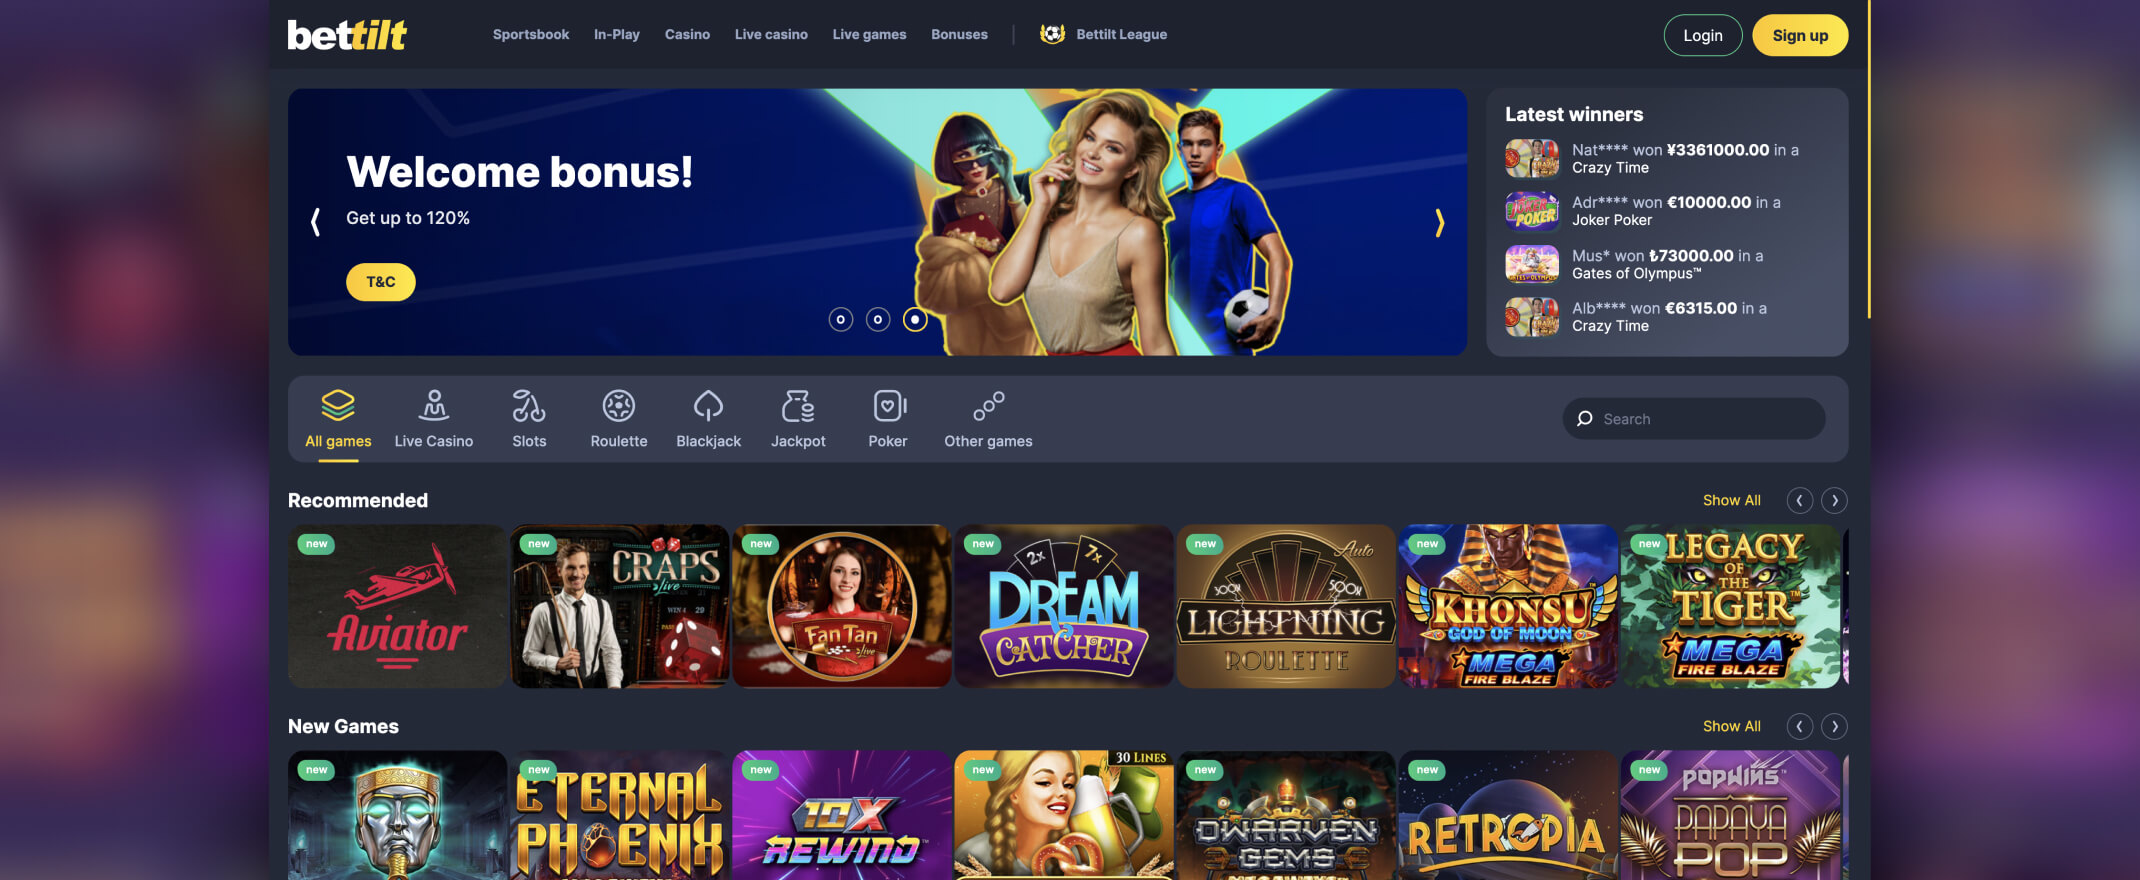 BetTilt casino screenshot of the homepage